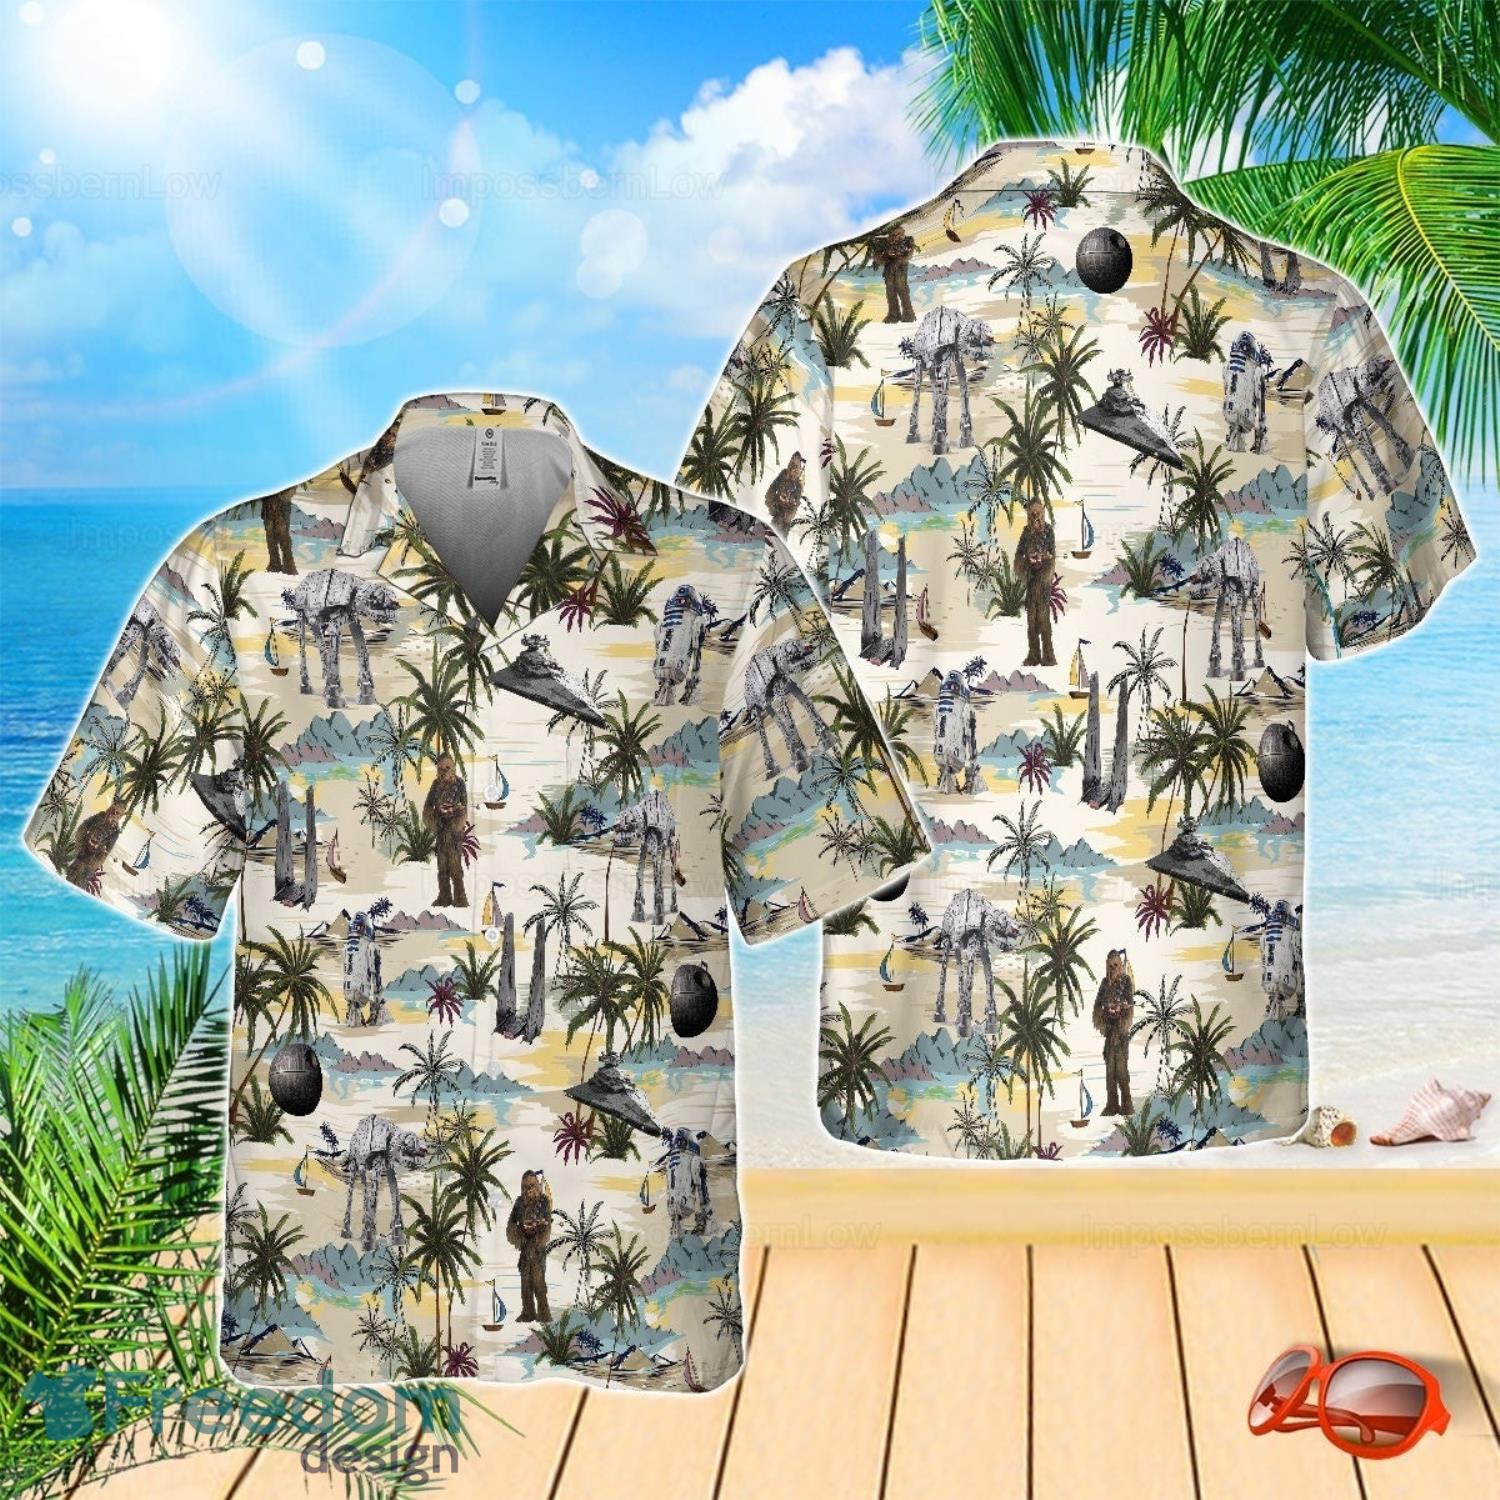 Star Wars Shirt, Star Wars Hawaii Shirt, Star Wars Button Shirt